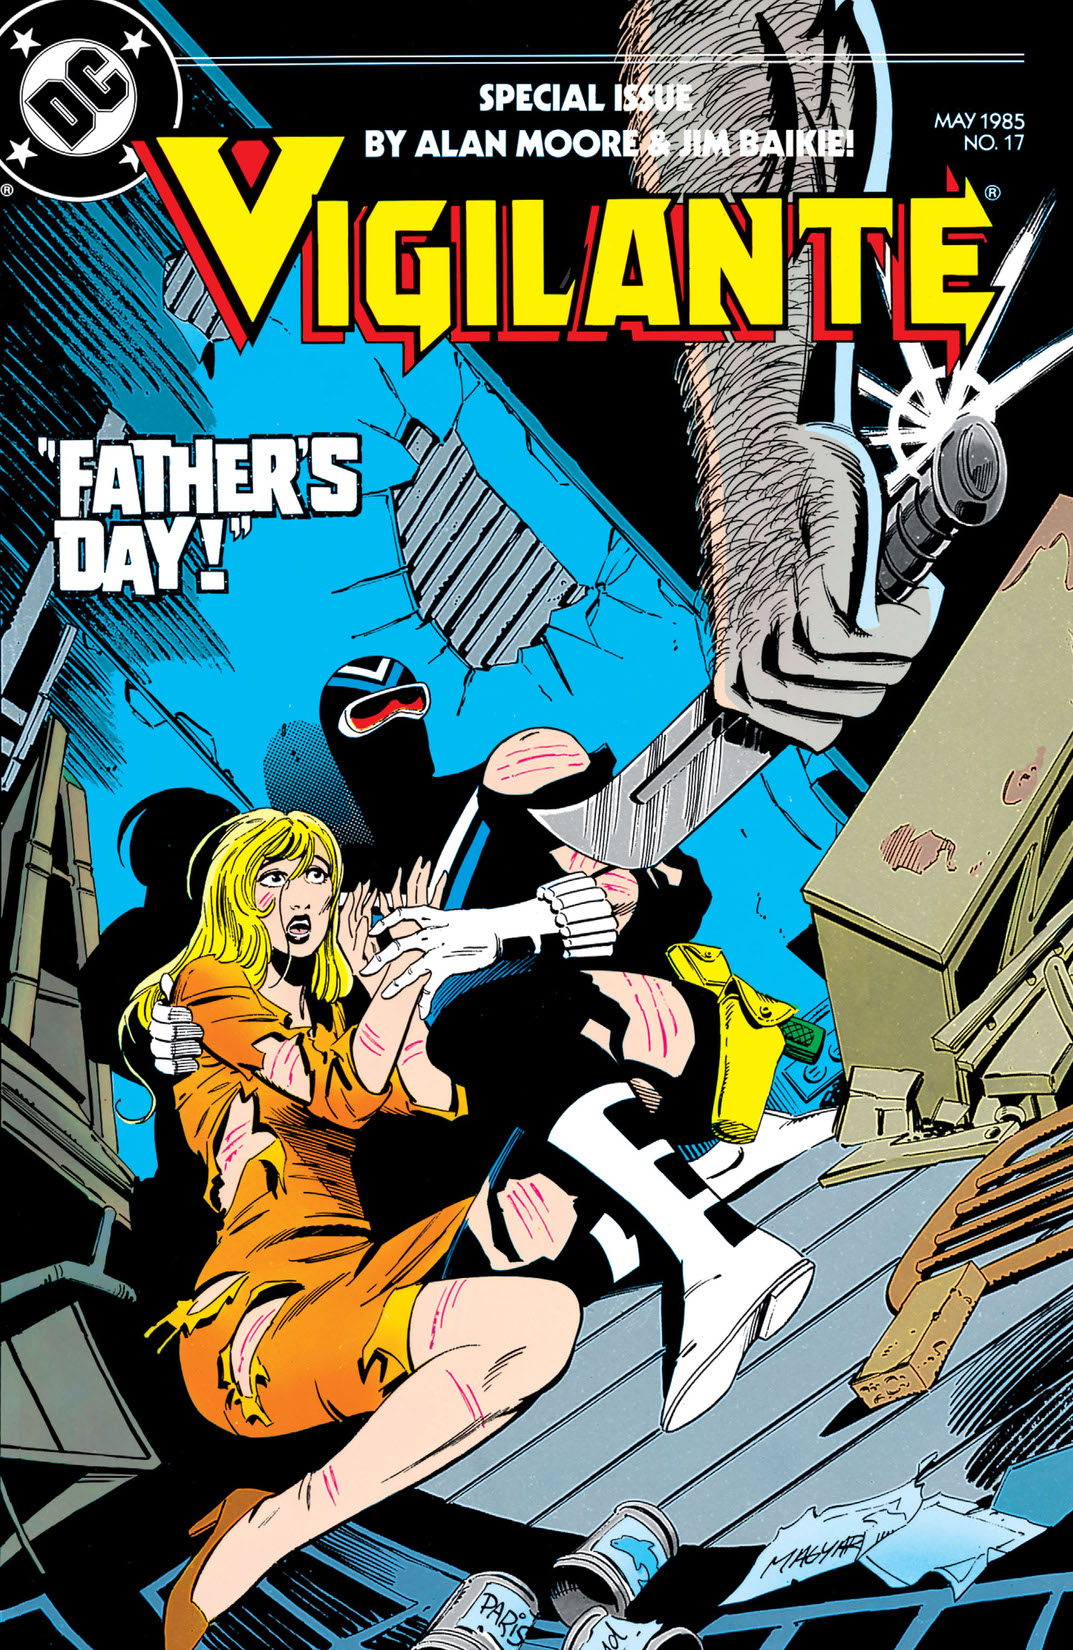 The Vigilante #17 preview images